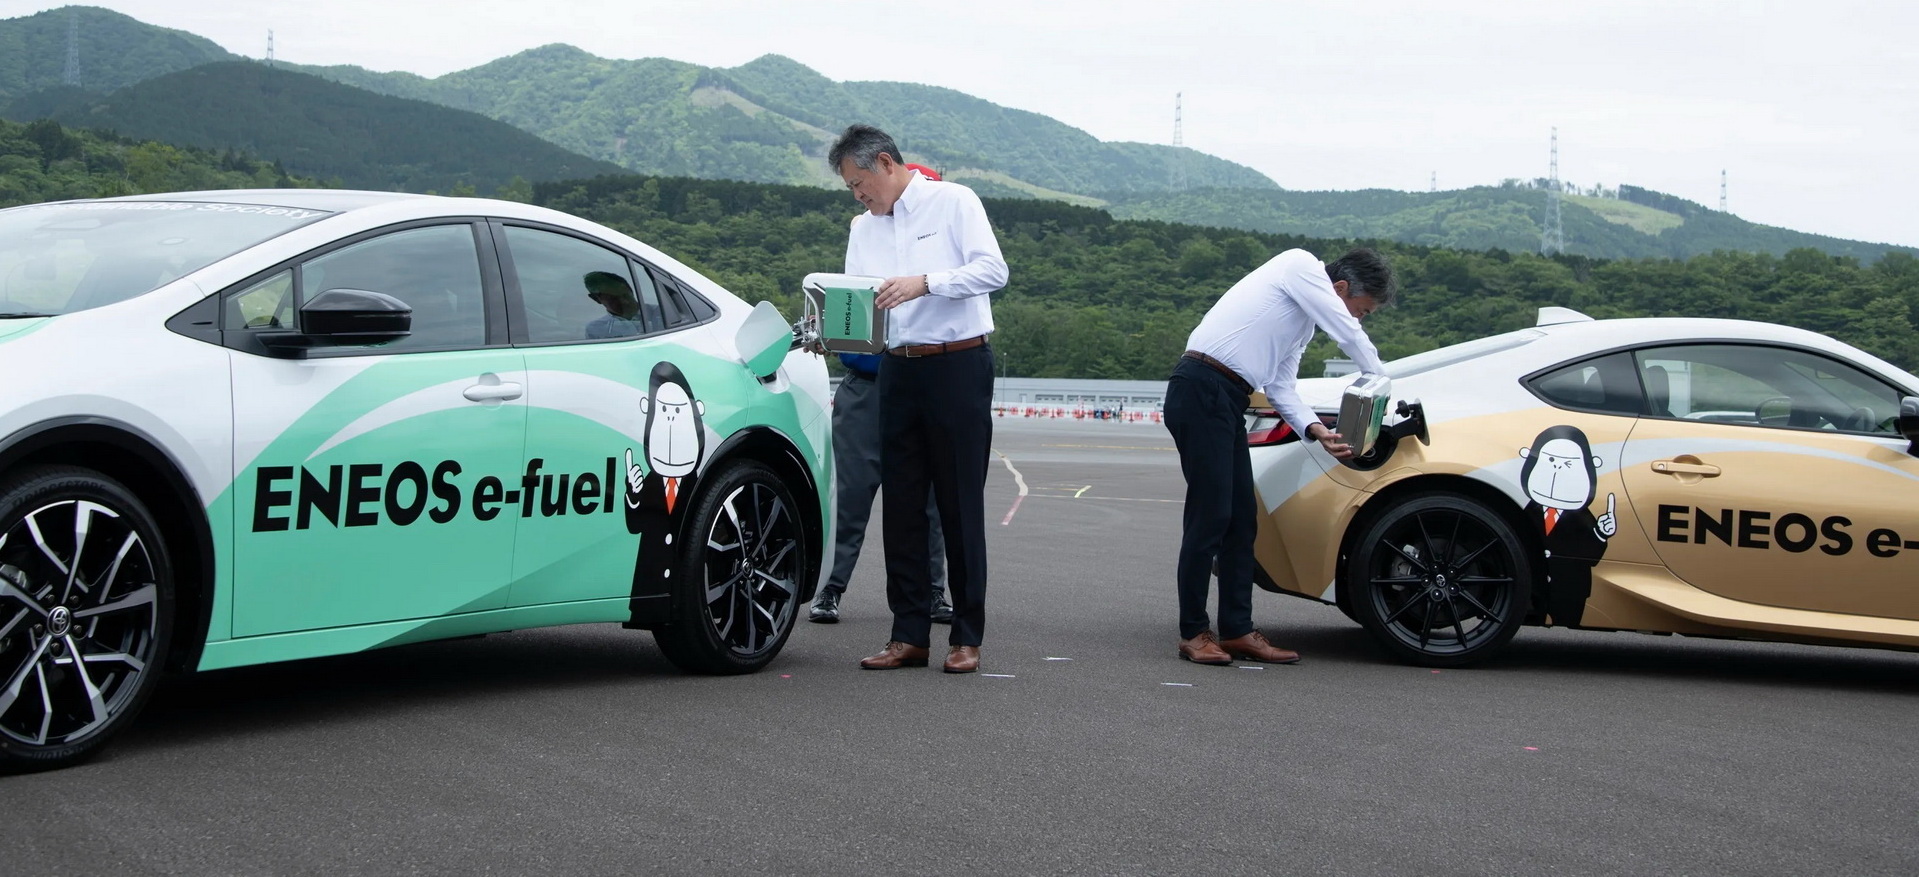 Eneos e-fuel & Toyota